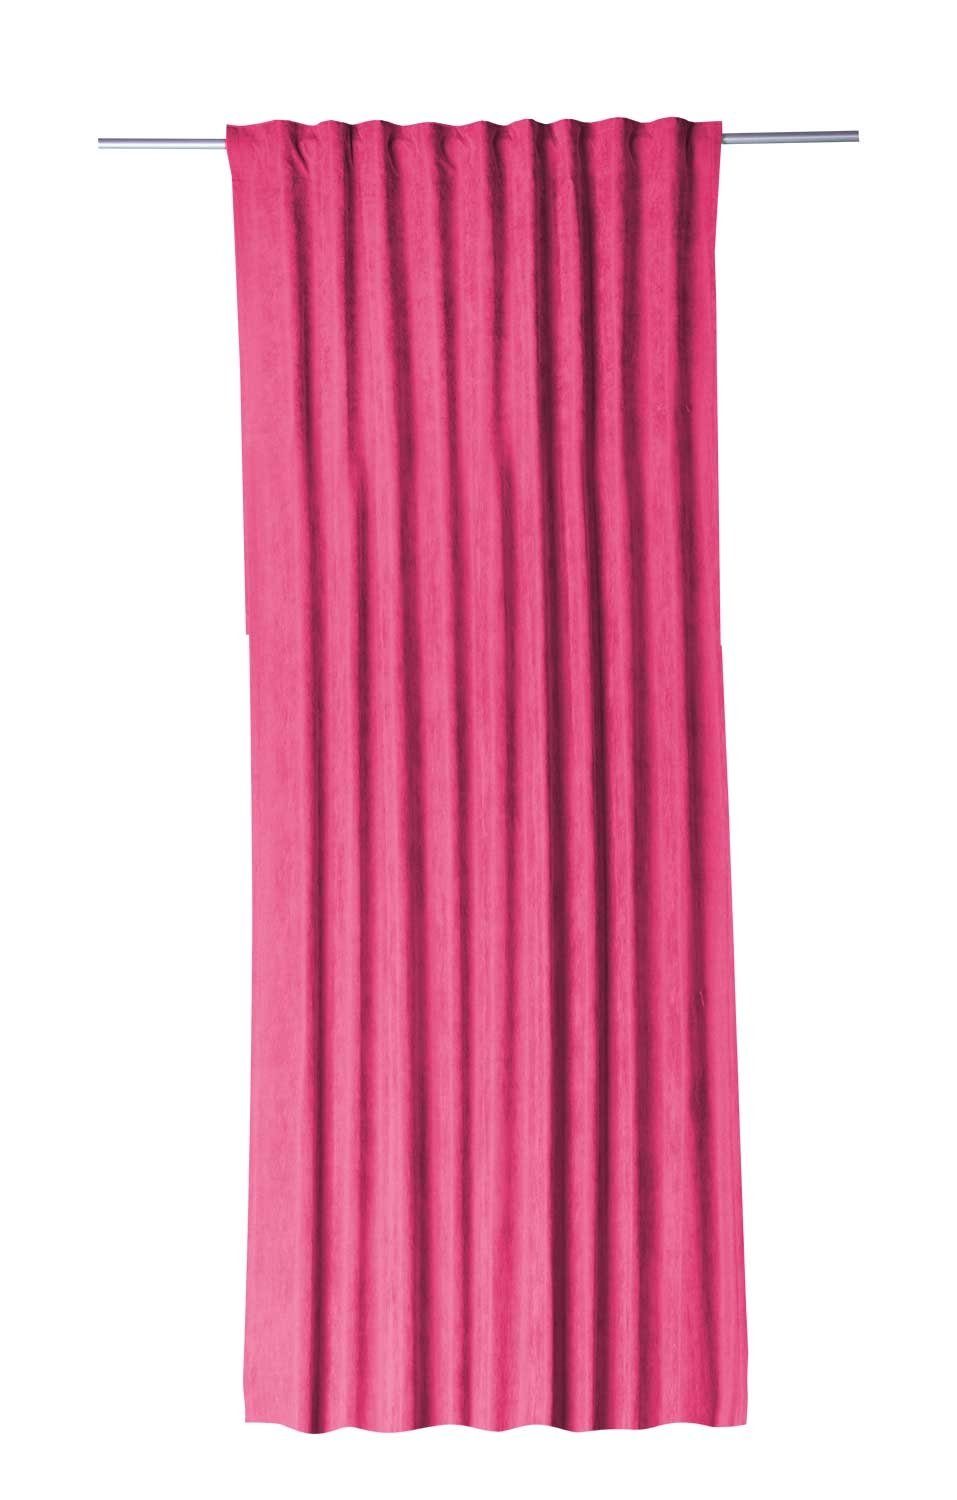 Vorhang Schlaufenvorhang, Rosa, B 135 cm, L 245 cm, Gözze, verdeckte  Schlaufen, halbtransparent, mit einer Größe von 135 x 245 cm